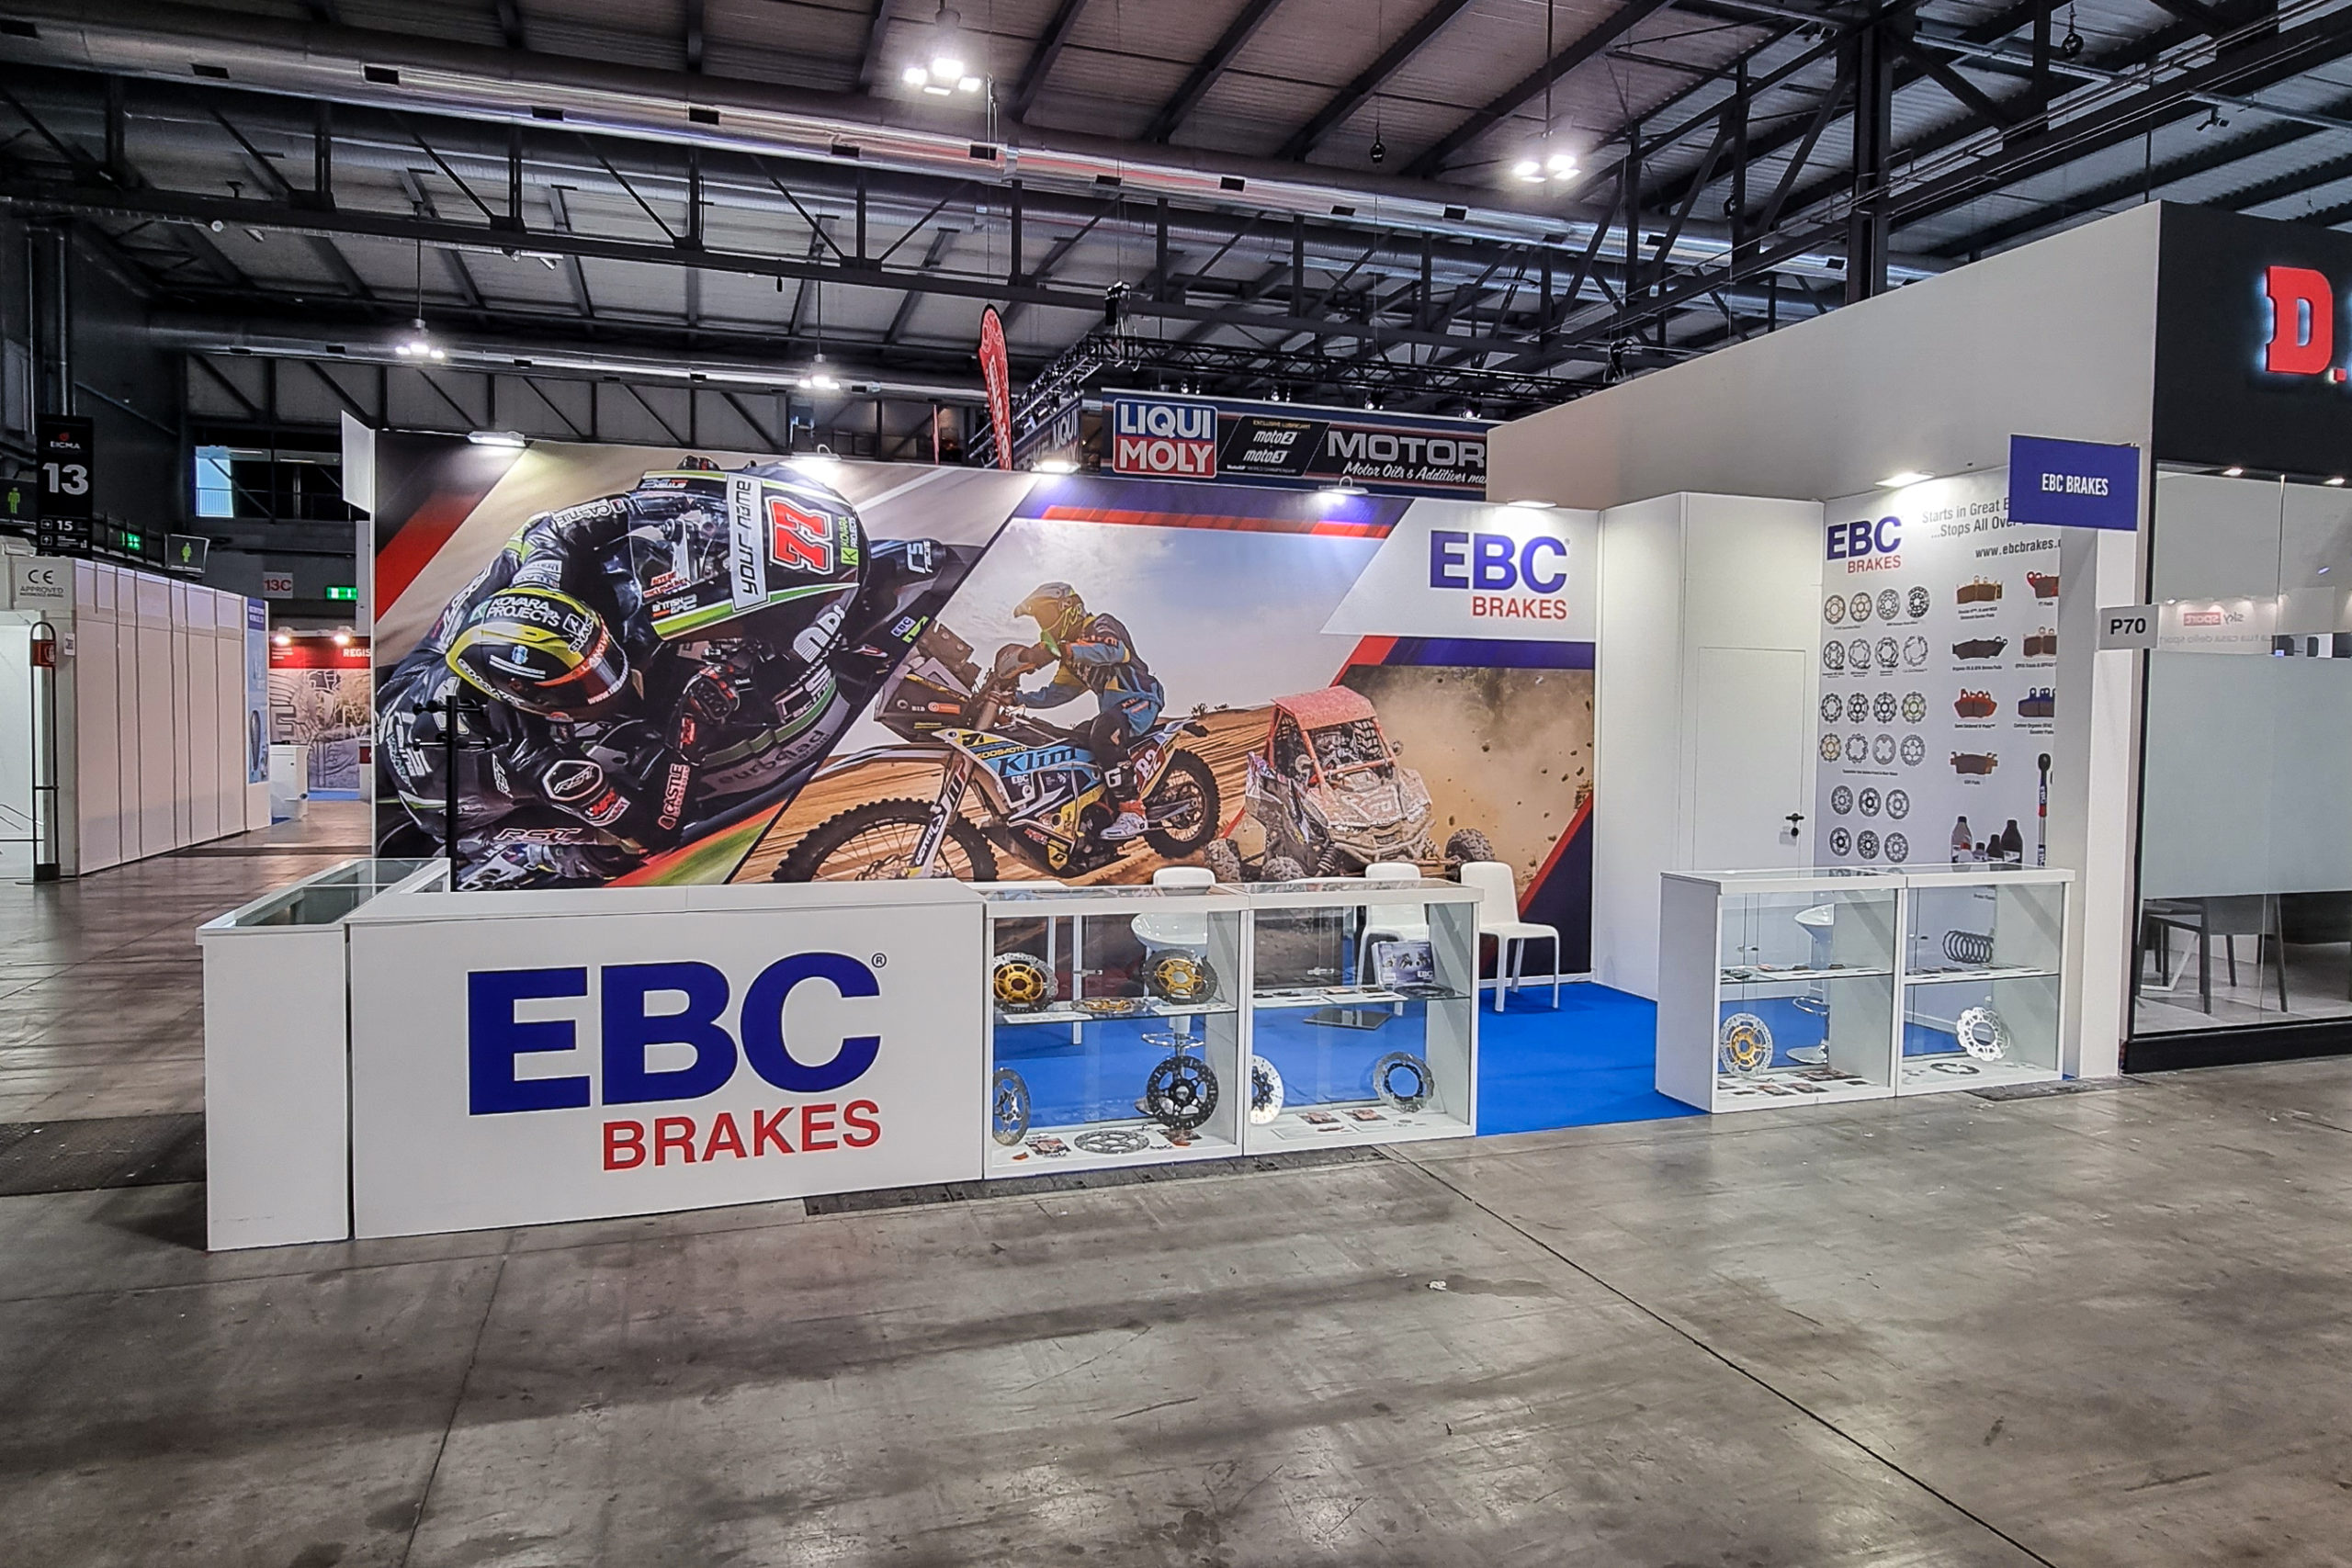 EBC Brakes Set to Attend Milan’s EICMA Motorcycle Show